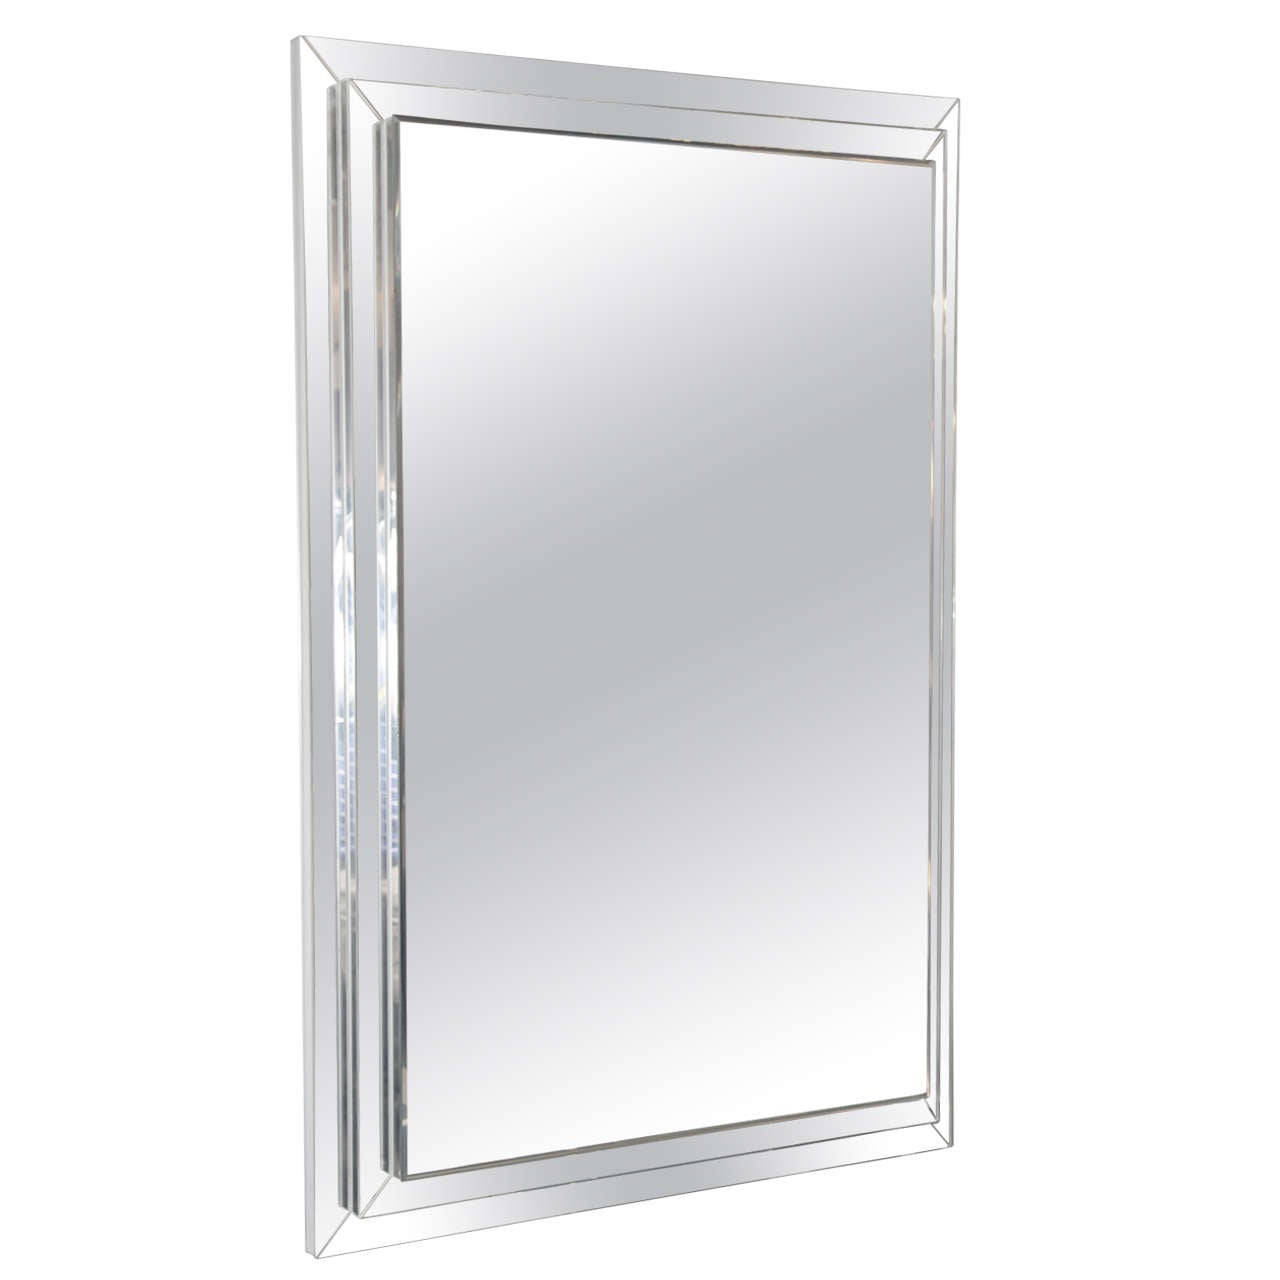 Miroir empilé rectangulaire sur mesure